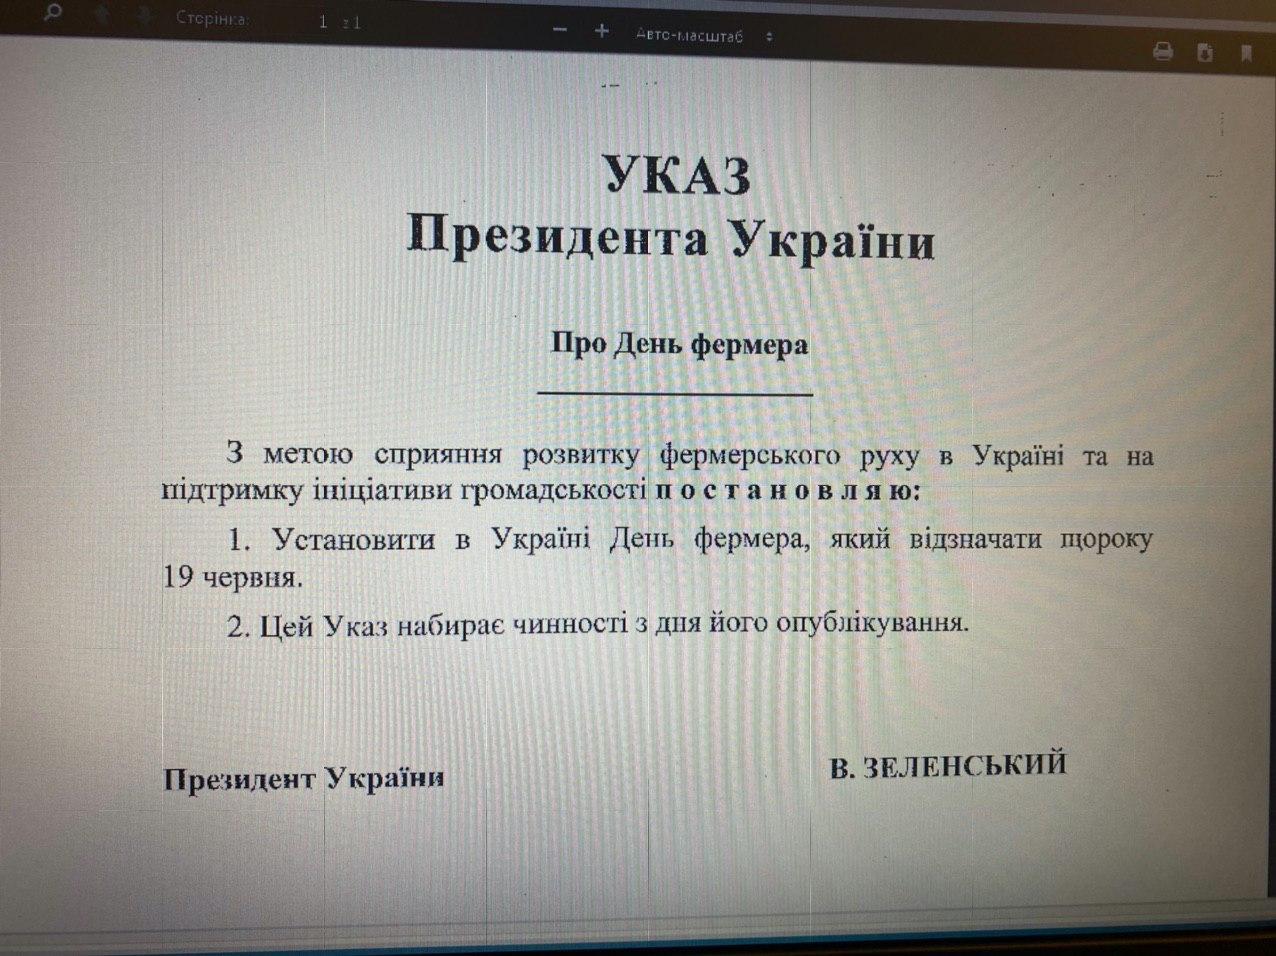 скриншот копии Указа президента